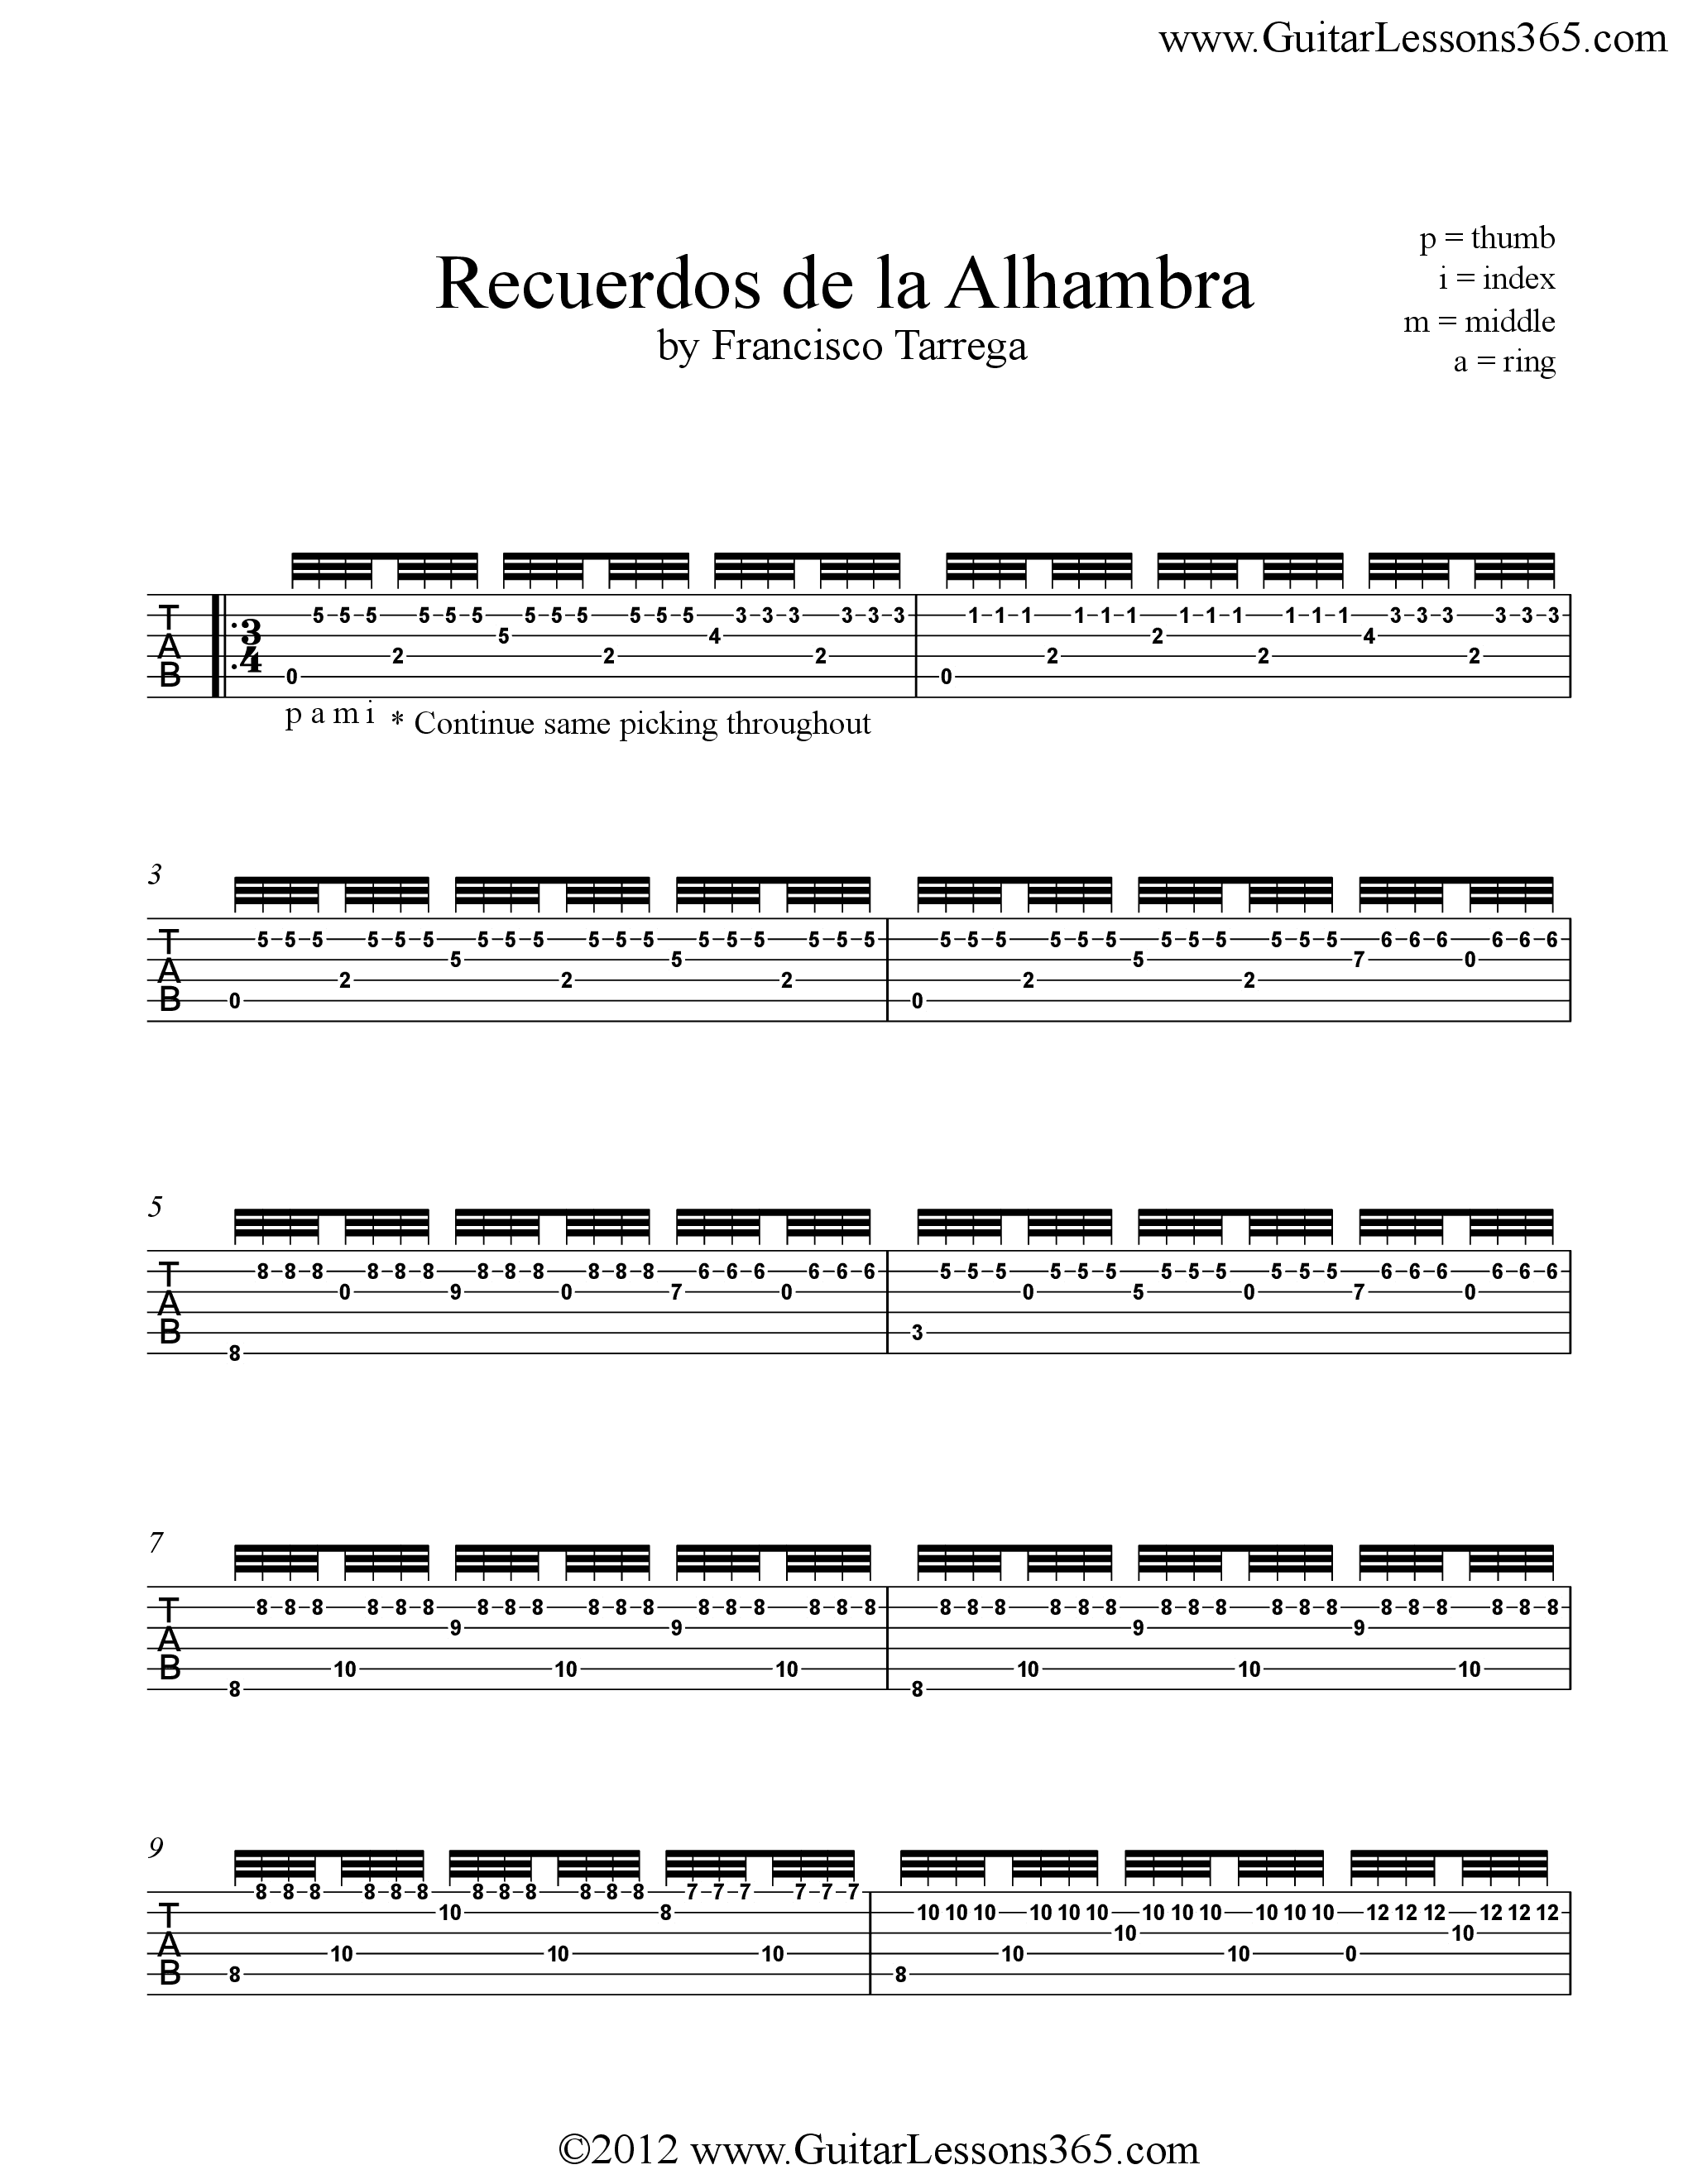 阿尔汉布拉宫的回忆吉他谱1